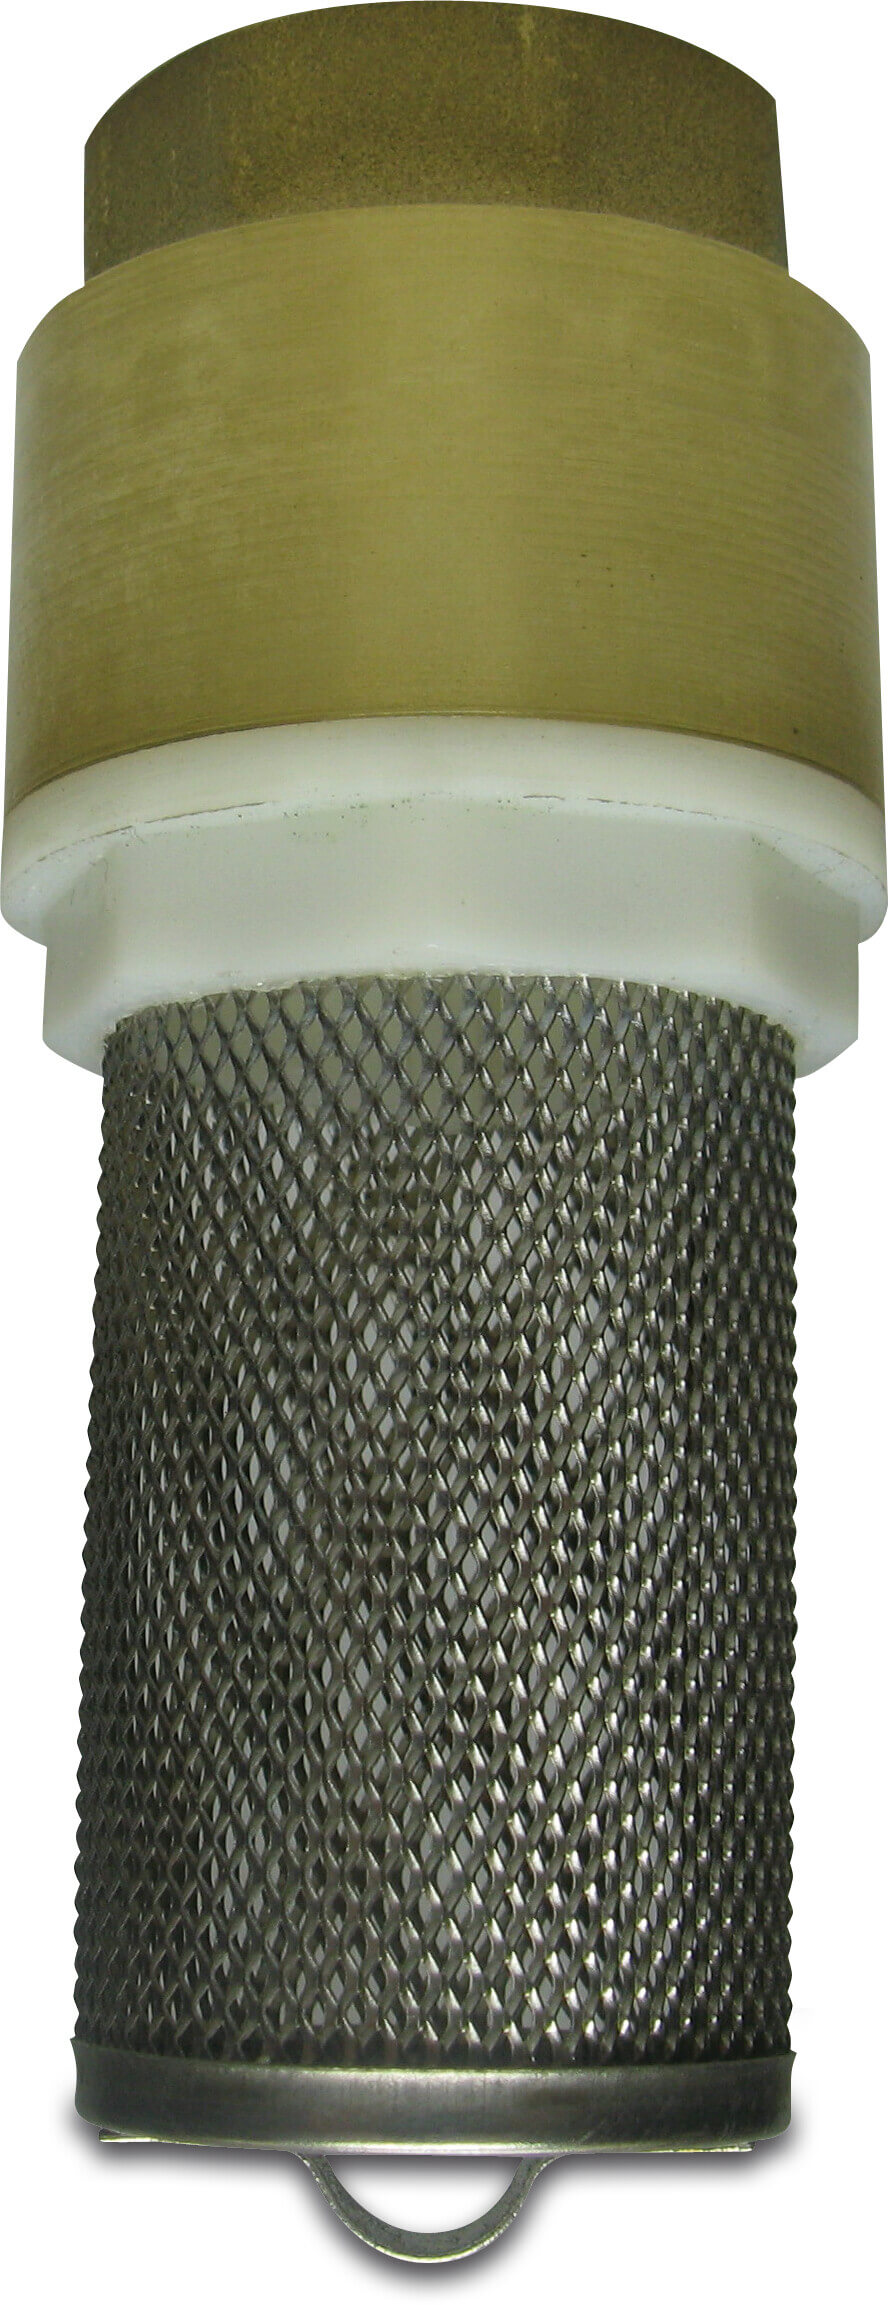 Profec Foot valve spring loaded brass 1" female thread 10bar